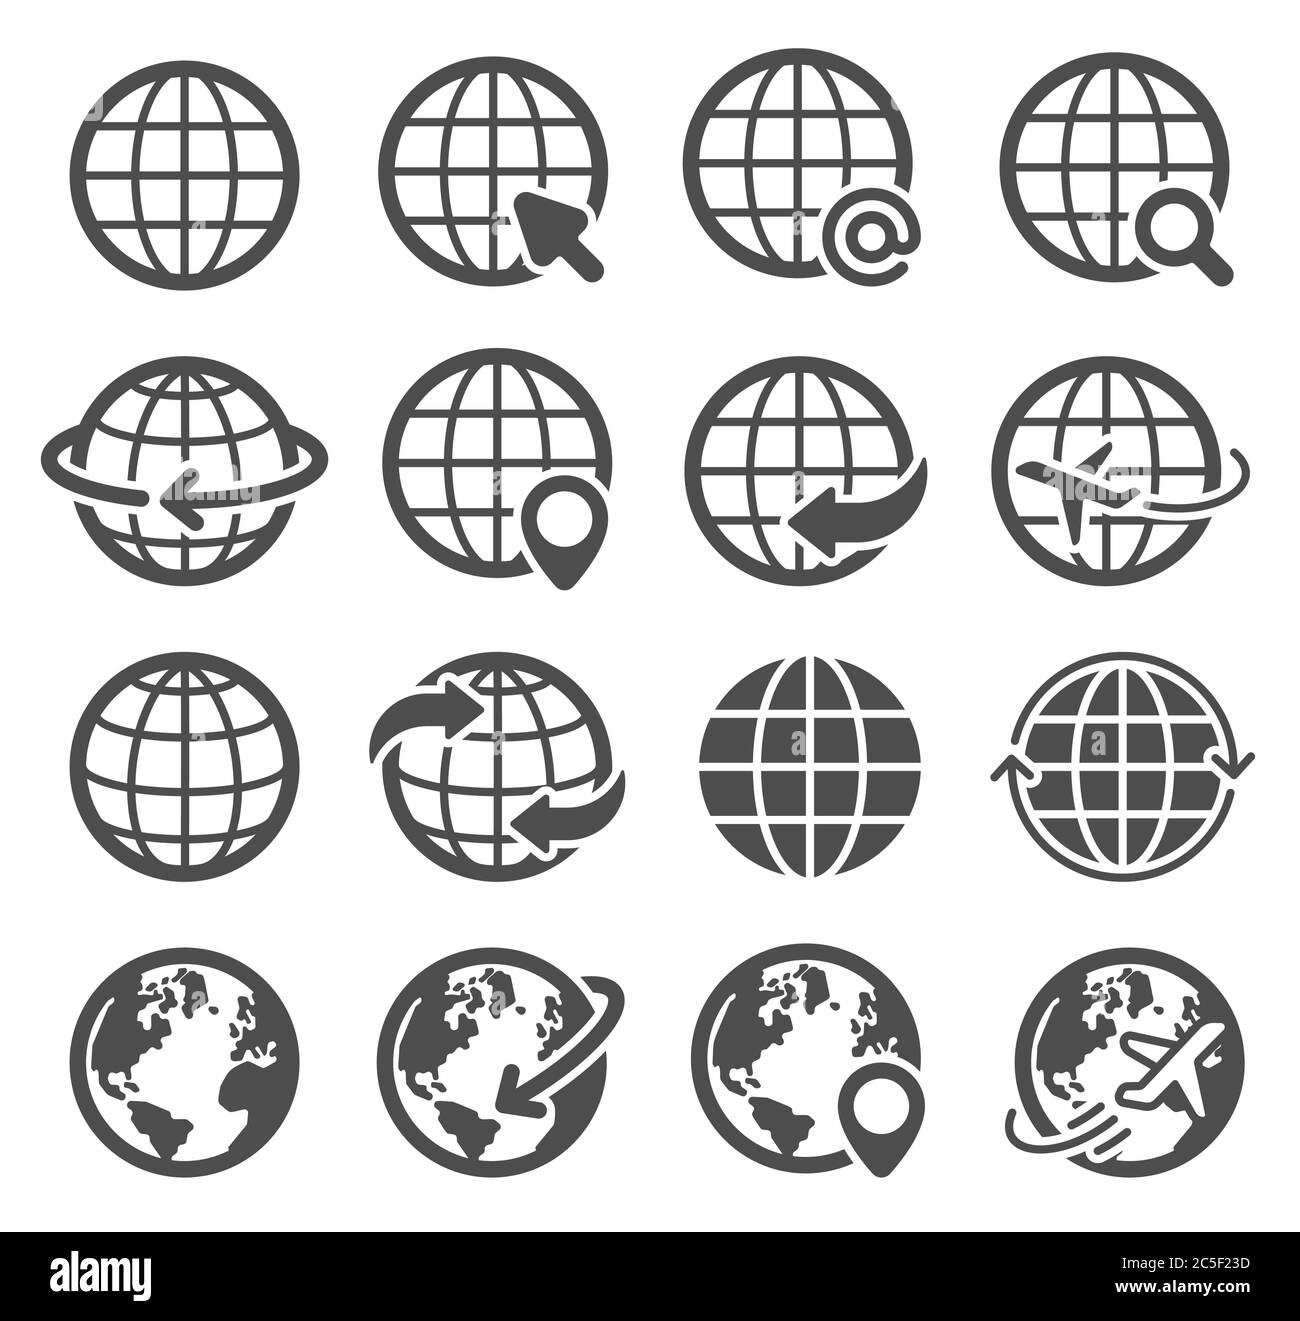 Ensemble d'icônes de globe. La terre mondiale, la carte mondiale continents planète sphérique, les pictogrammes de communication mondiale sur Internet, les symboles géographiques vectoriels Illustration de Vecteur